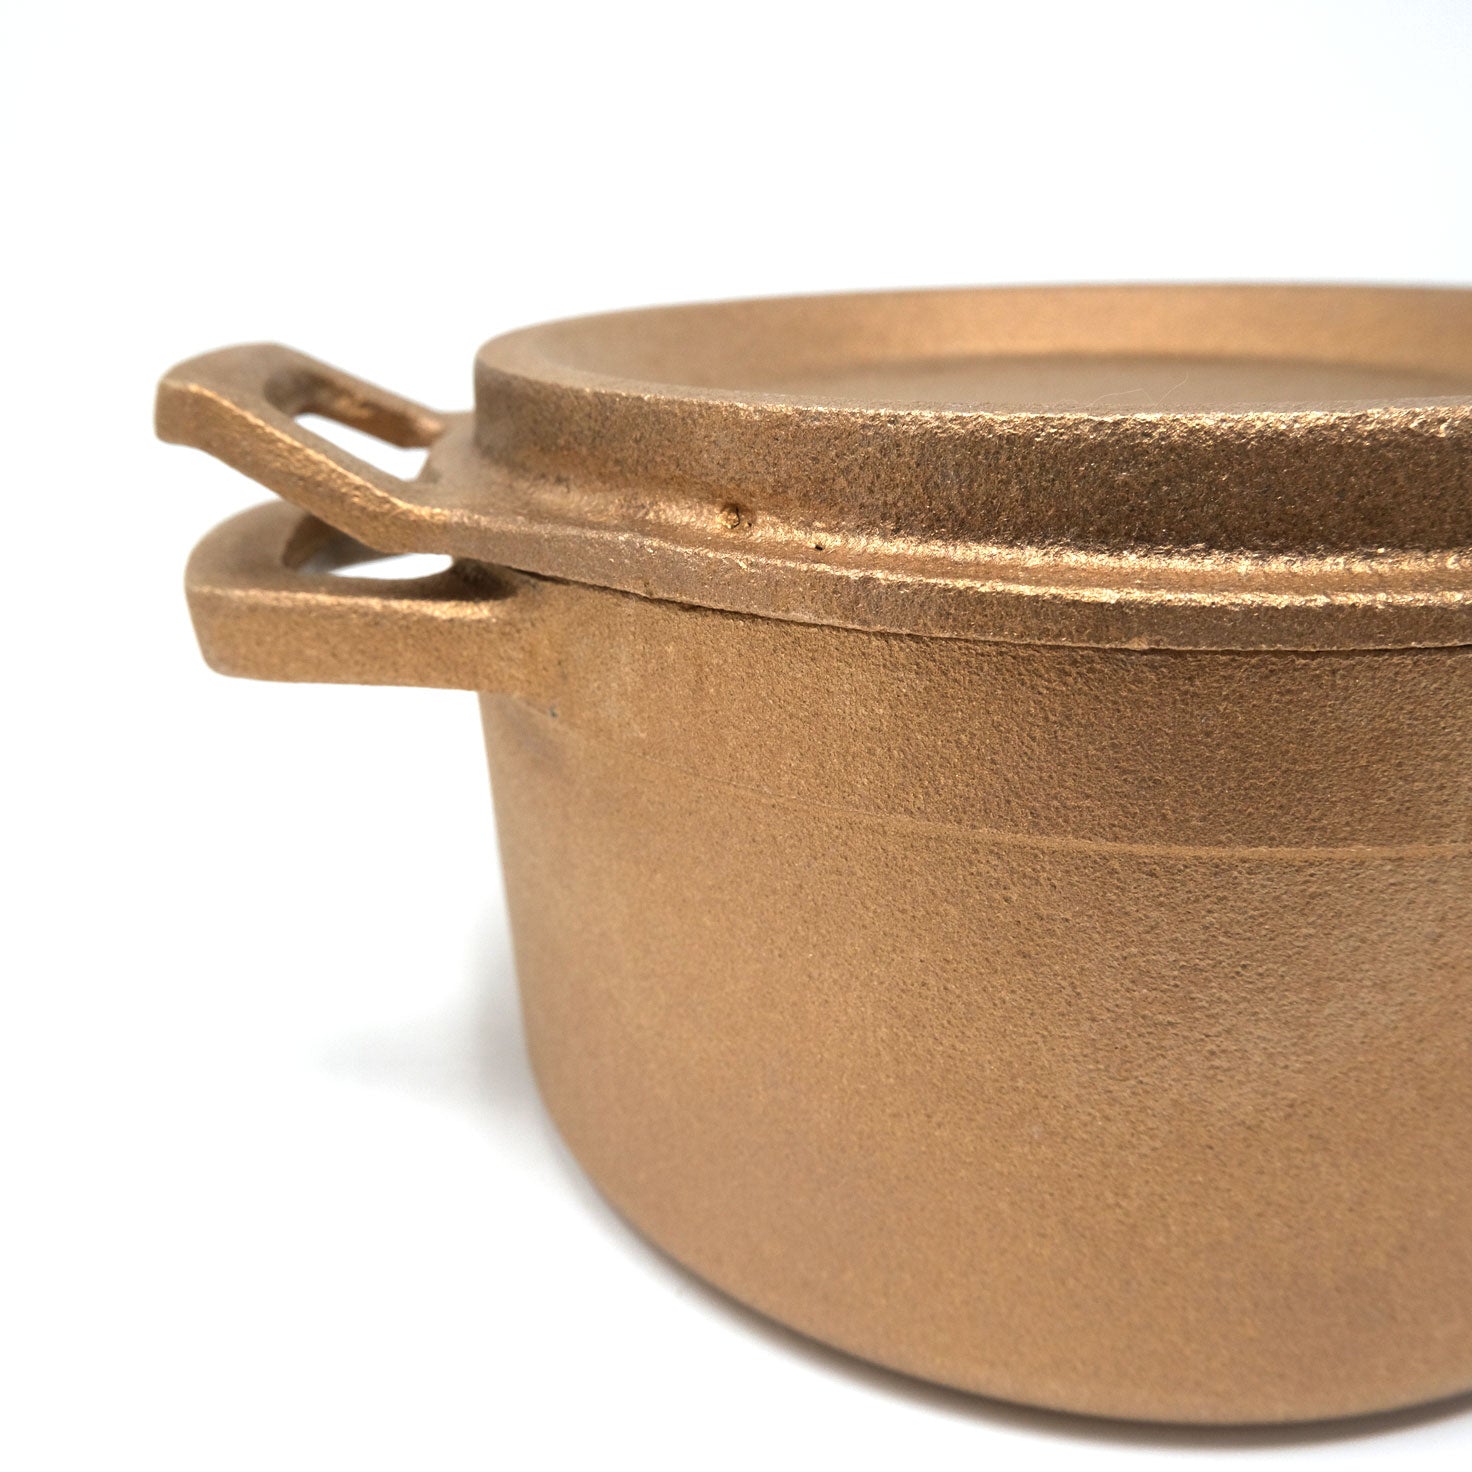 進化系ダッチオーブン 銅合金製 鋳物鍋 『tefu-tefu てふてふ』 - OTONA-MONO